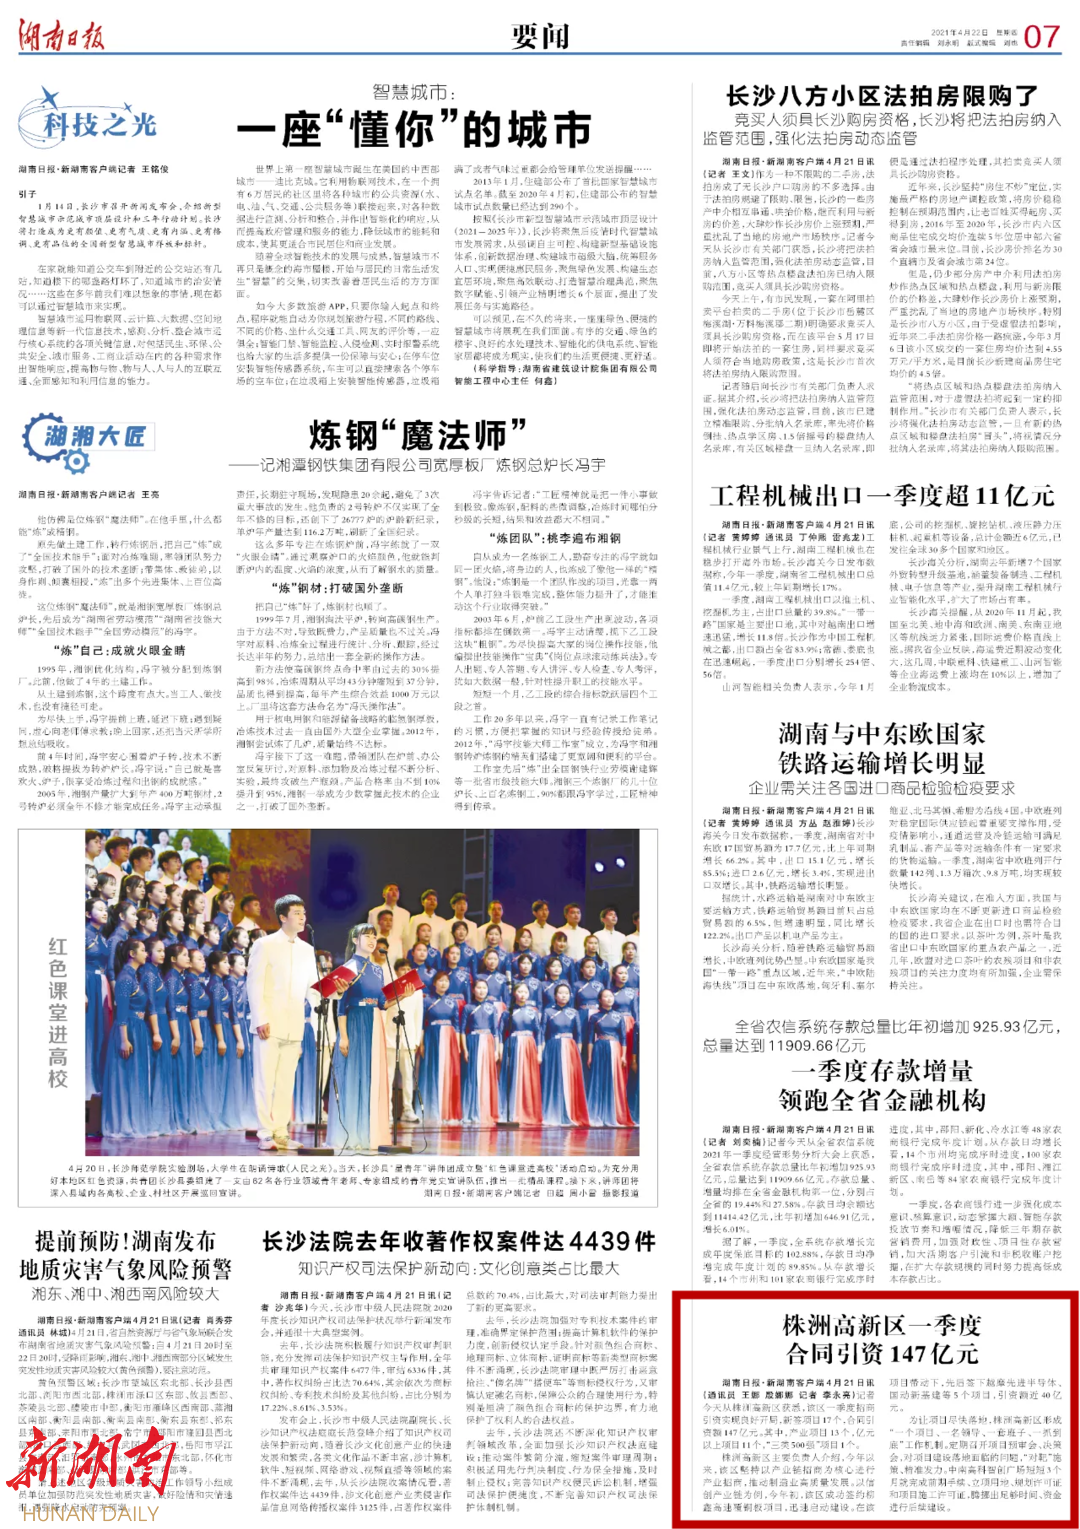 湖南日报 | 株洲高新区一季度合同引资147亿元